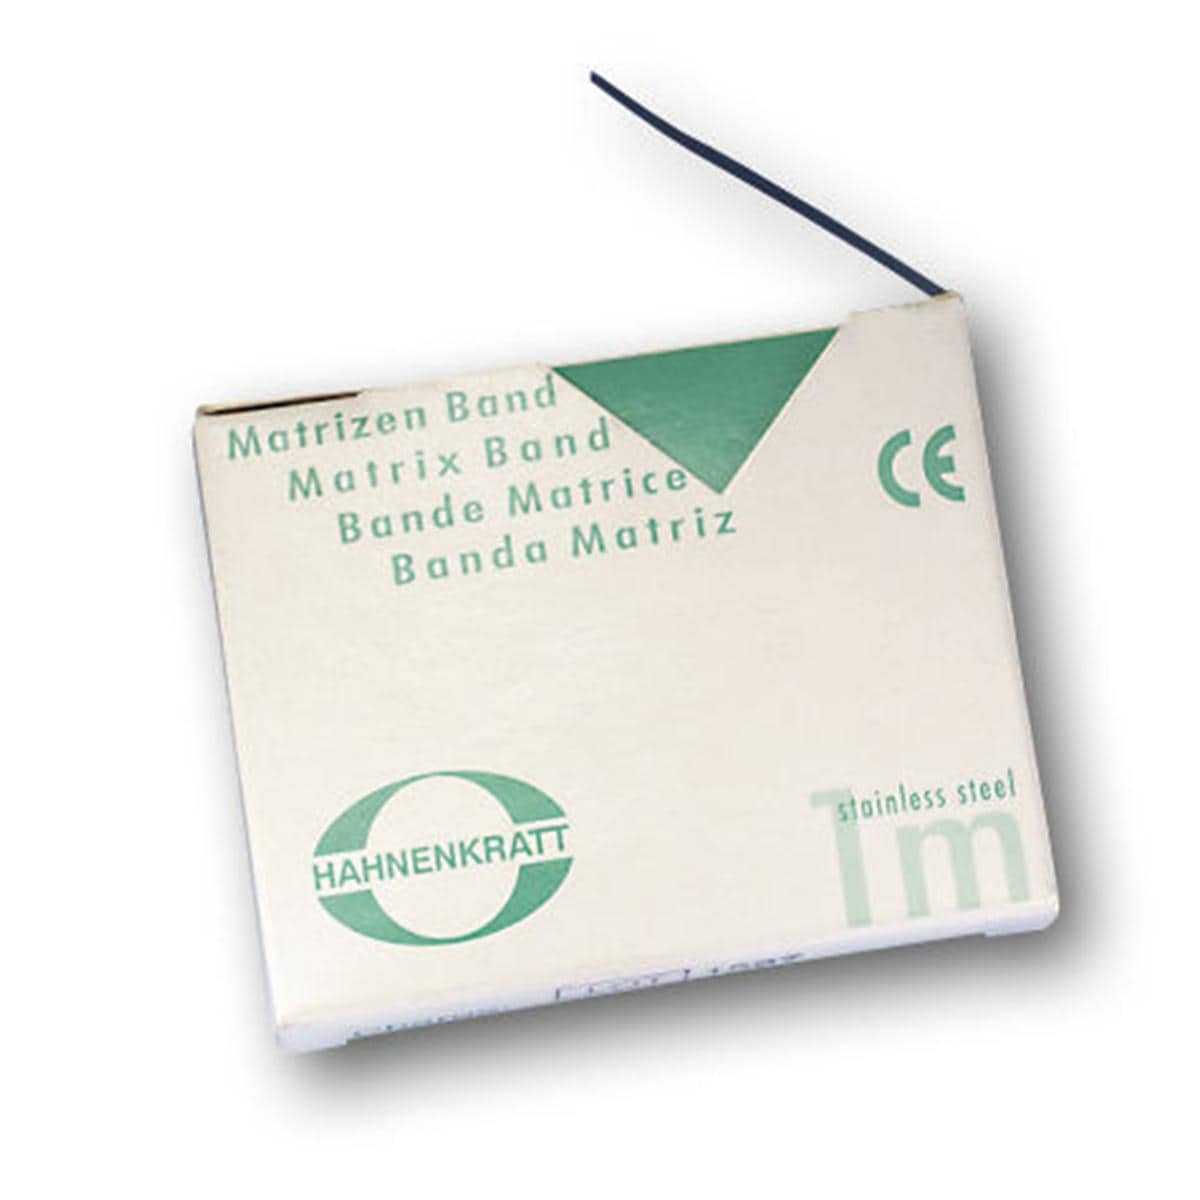 Matrizenband Hahnenkratt - Rolle 10 m - Breite 6 mm, Stärke 0,04 mm